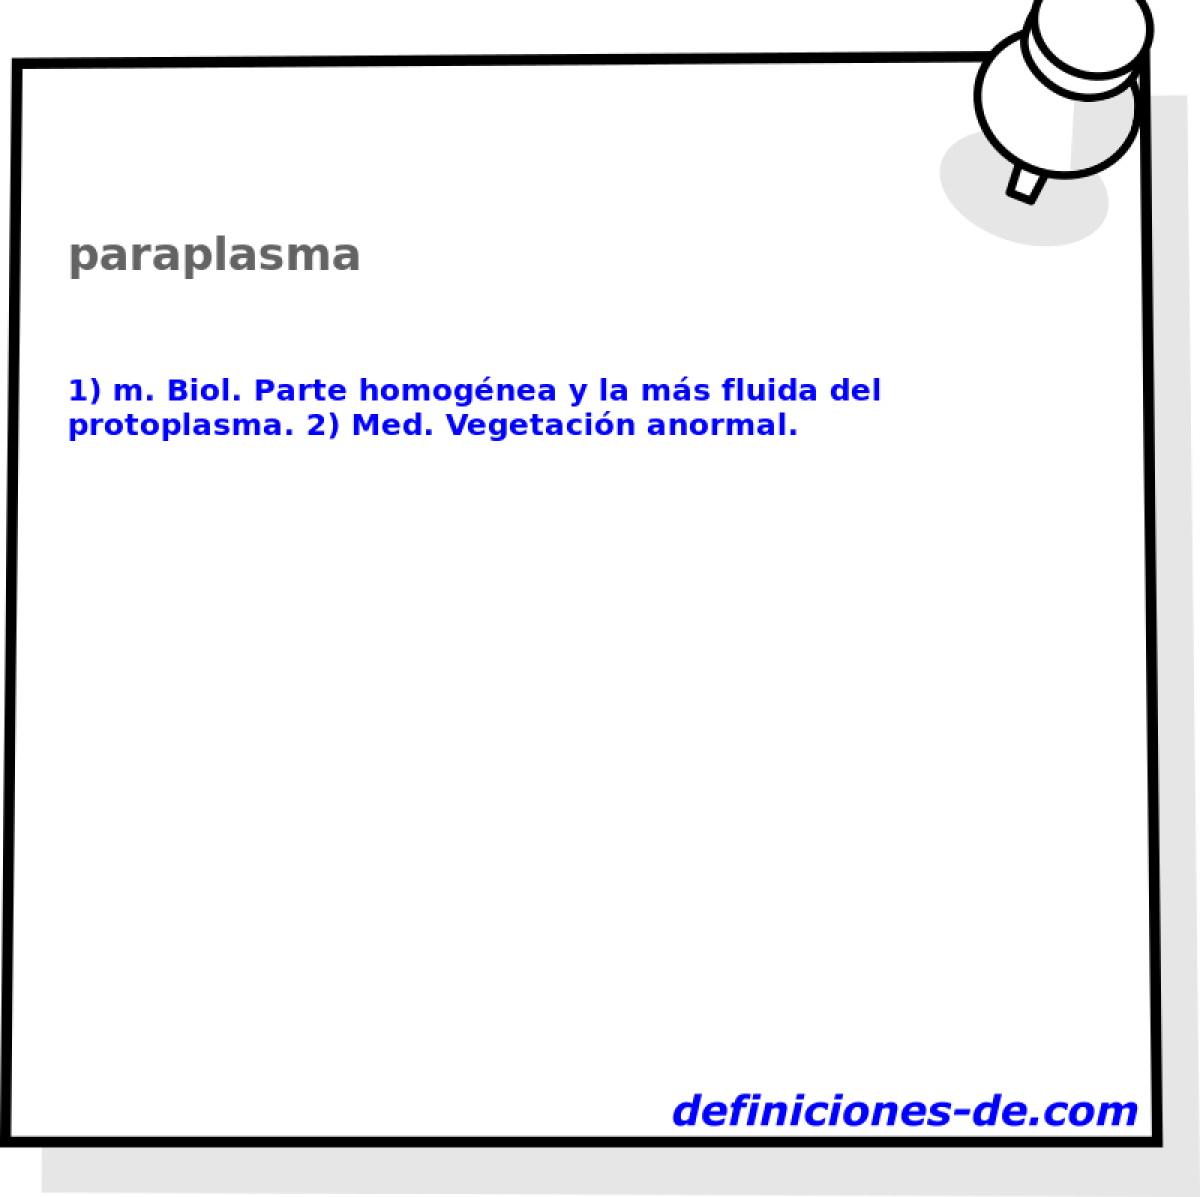 paraplasma 